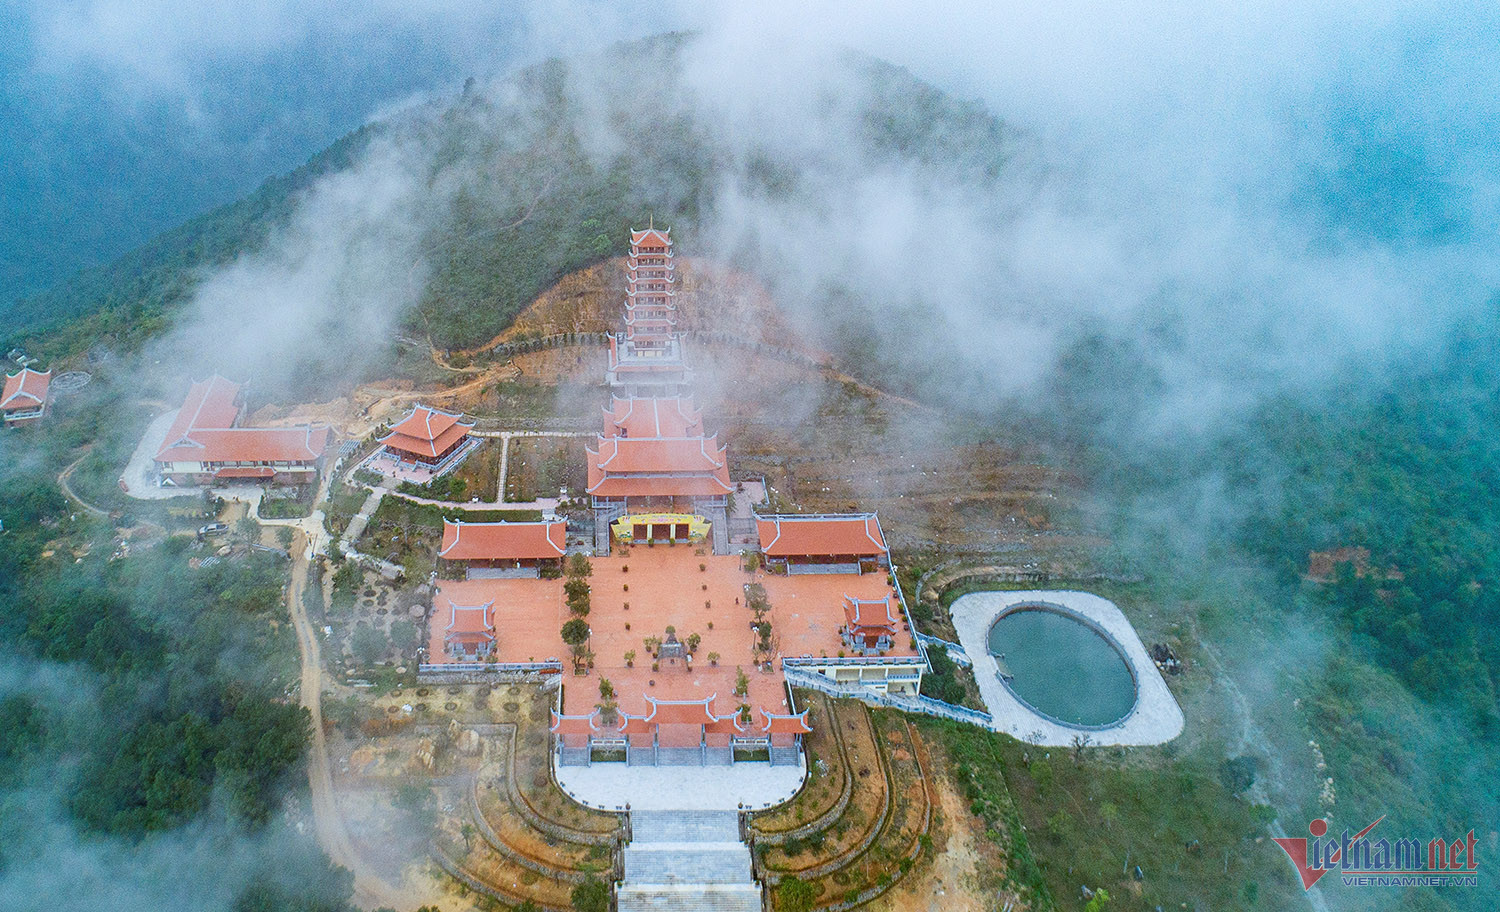 Ngôi chùa Đại Tuệ nằm trên dãy núi Đại Huệ thu hút nhiều người lên tham quan, dạo chơi. Ảnh: DL